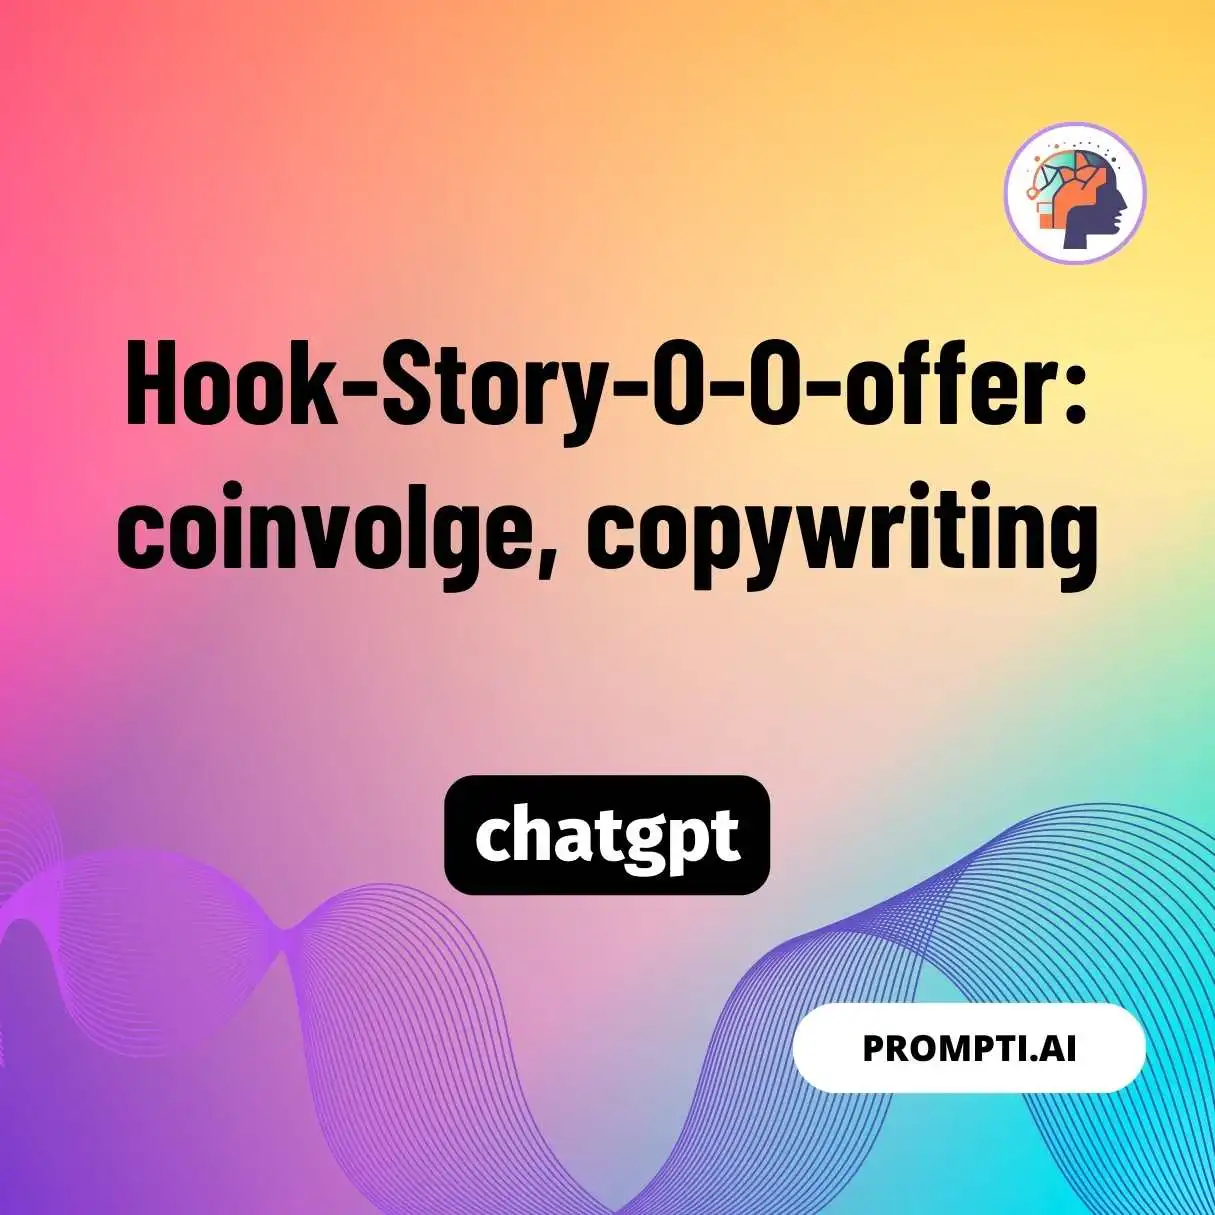 Hook-Story-O-O-offer: coinvolge, copywriting